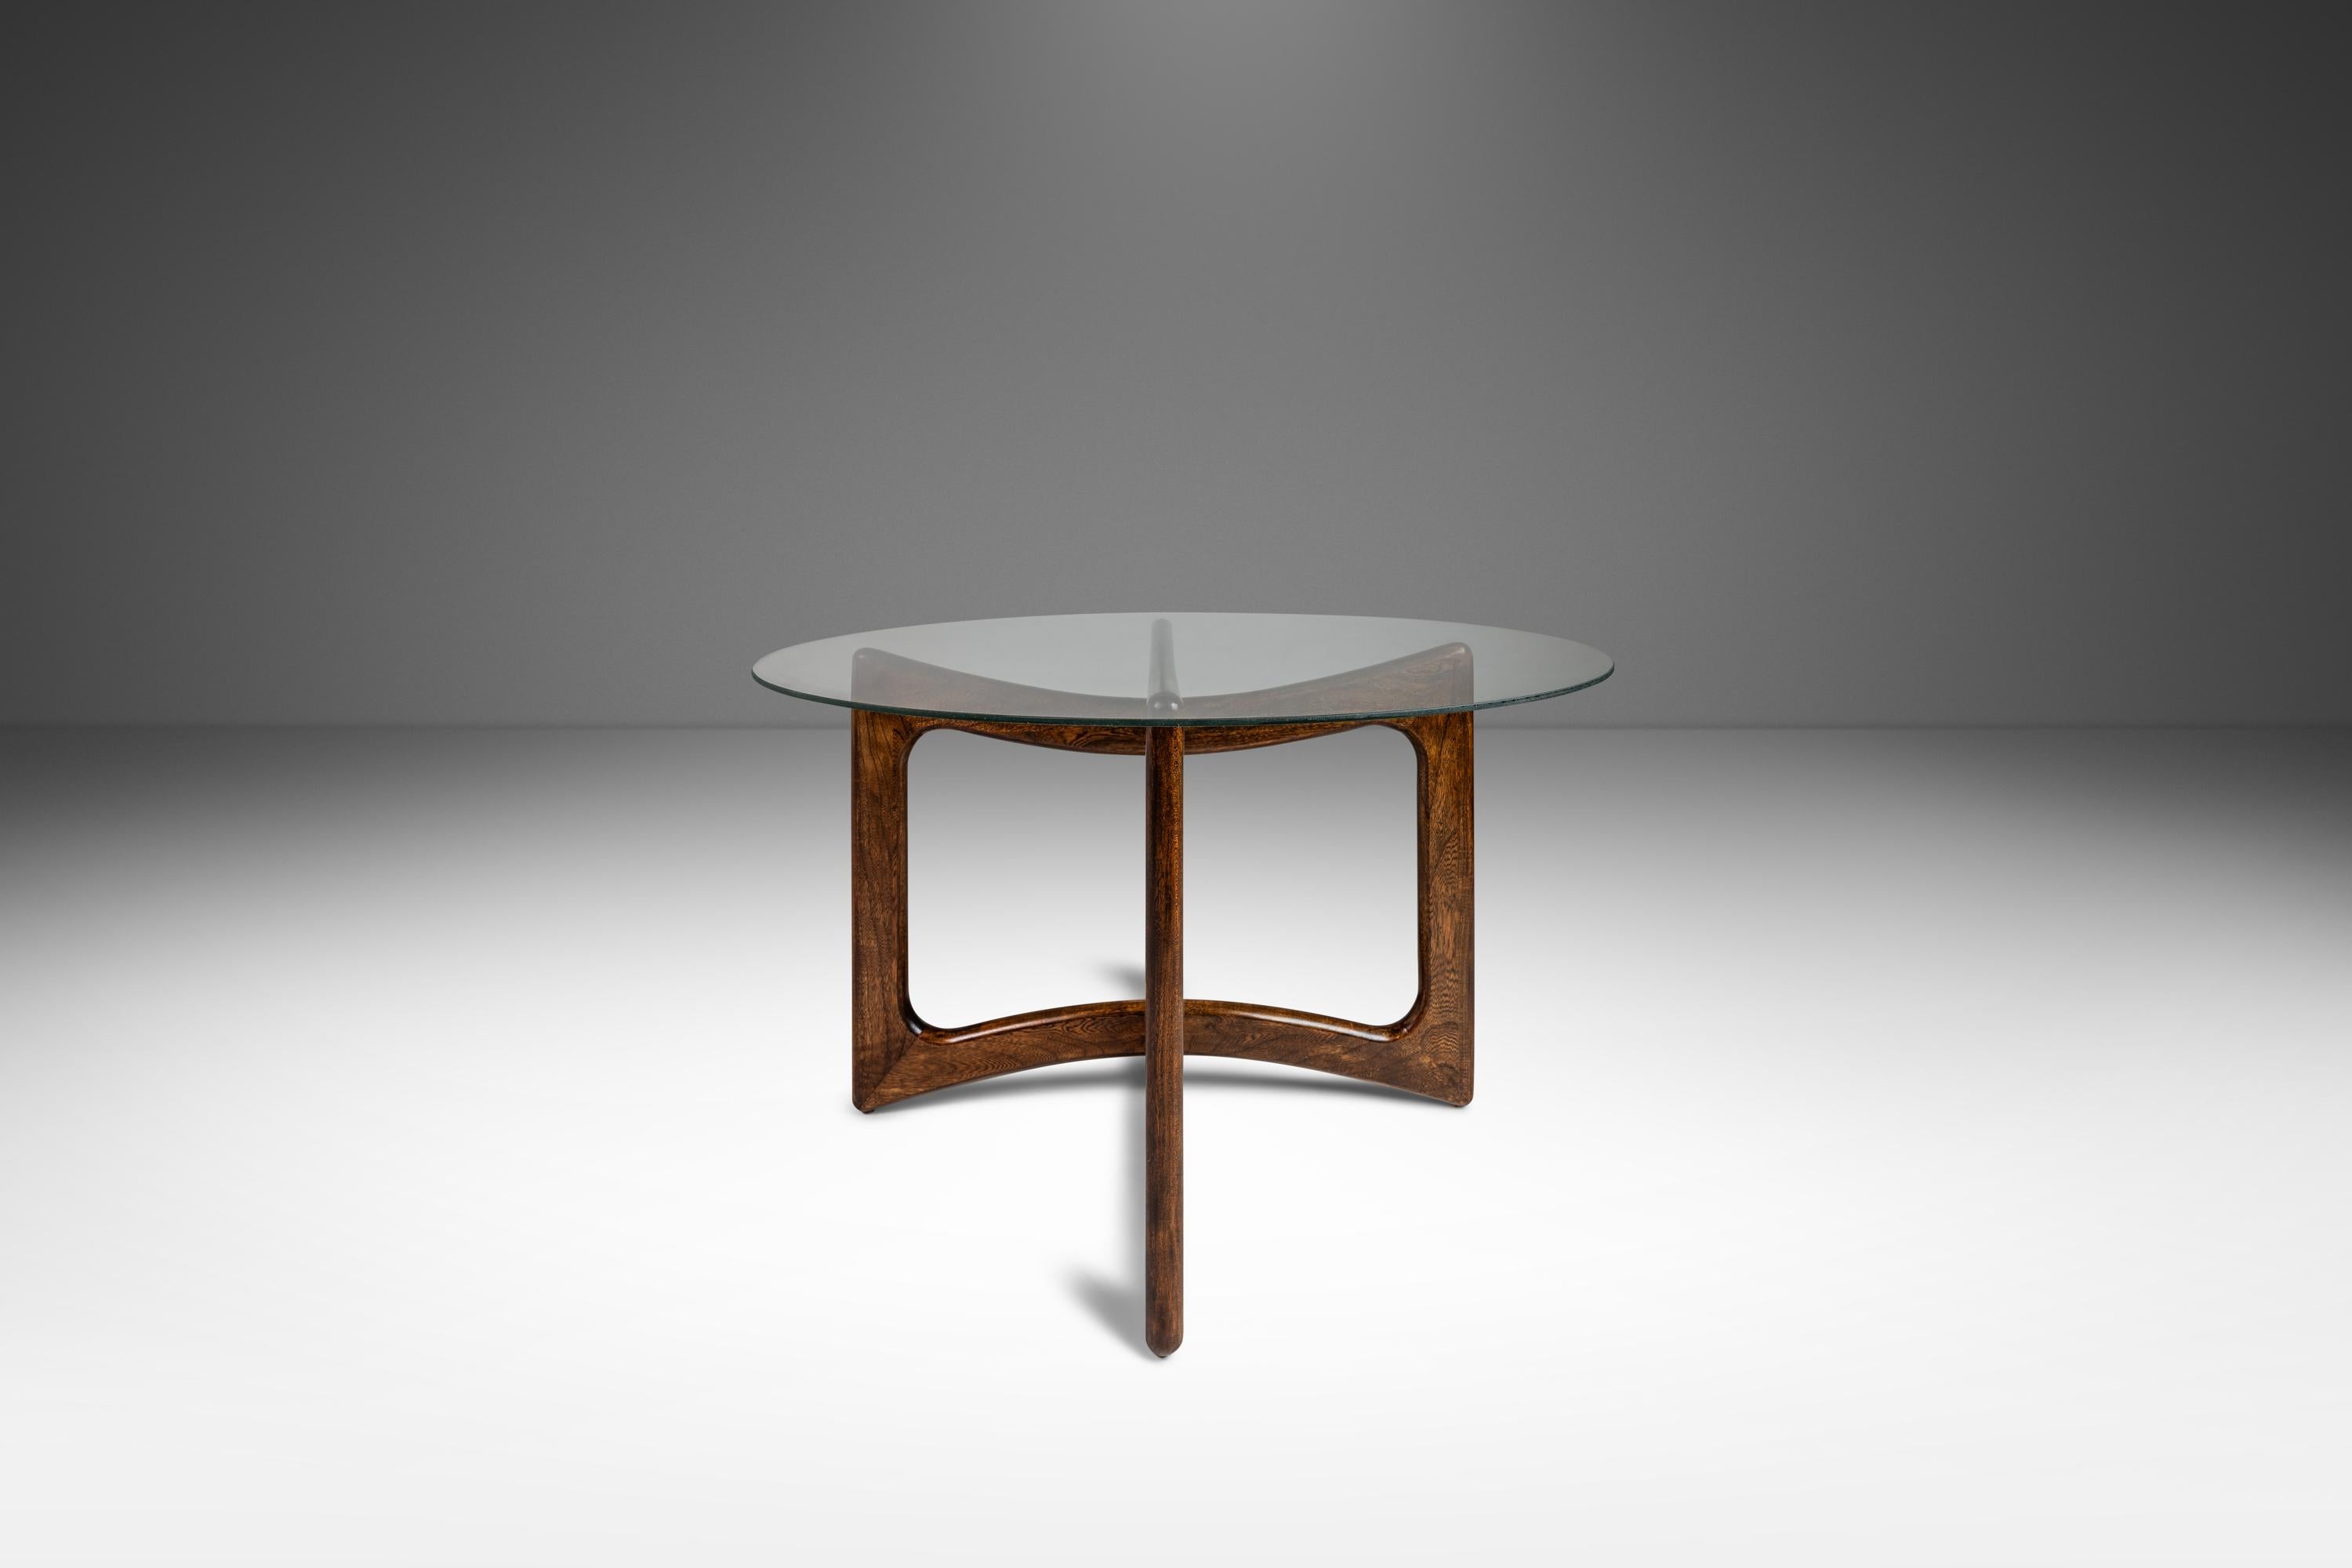 Voici une table basse récemment restaurée, attribuée à l'incomparable Adrian Pearsall à la fin des années 1950 et fabriquée par Craft Associates au début des années 1960. Dotée d'un piètement en chêne massif avec des veinures extraordinaires, cette